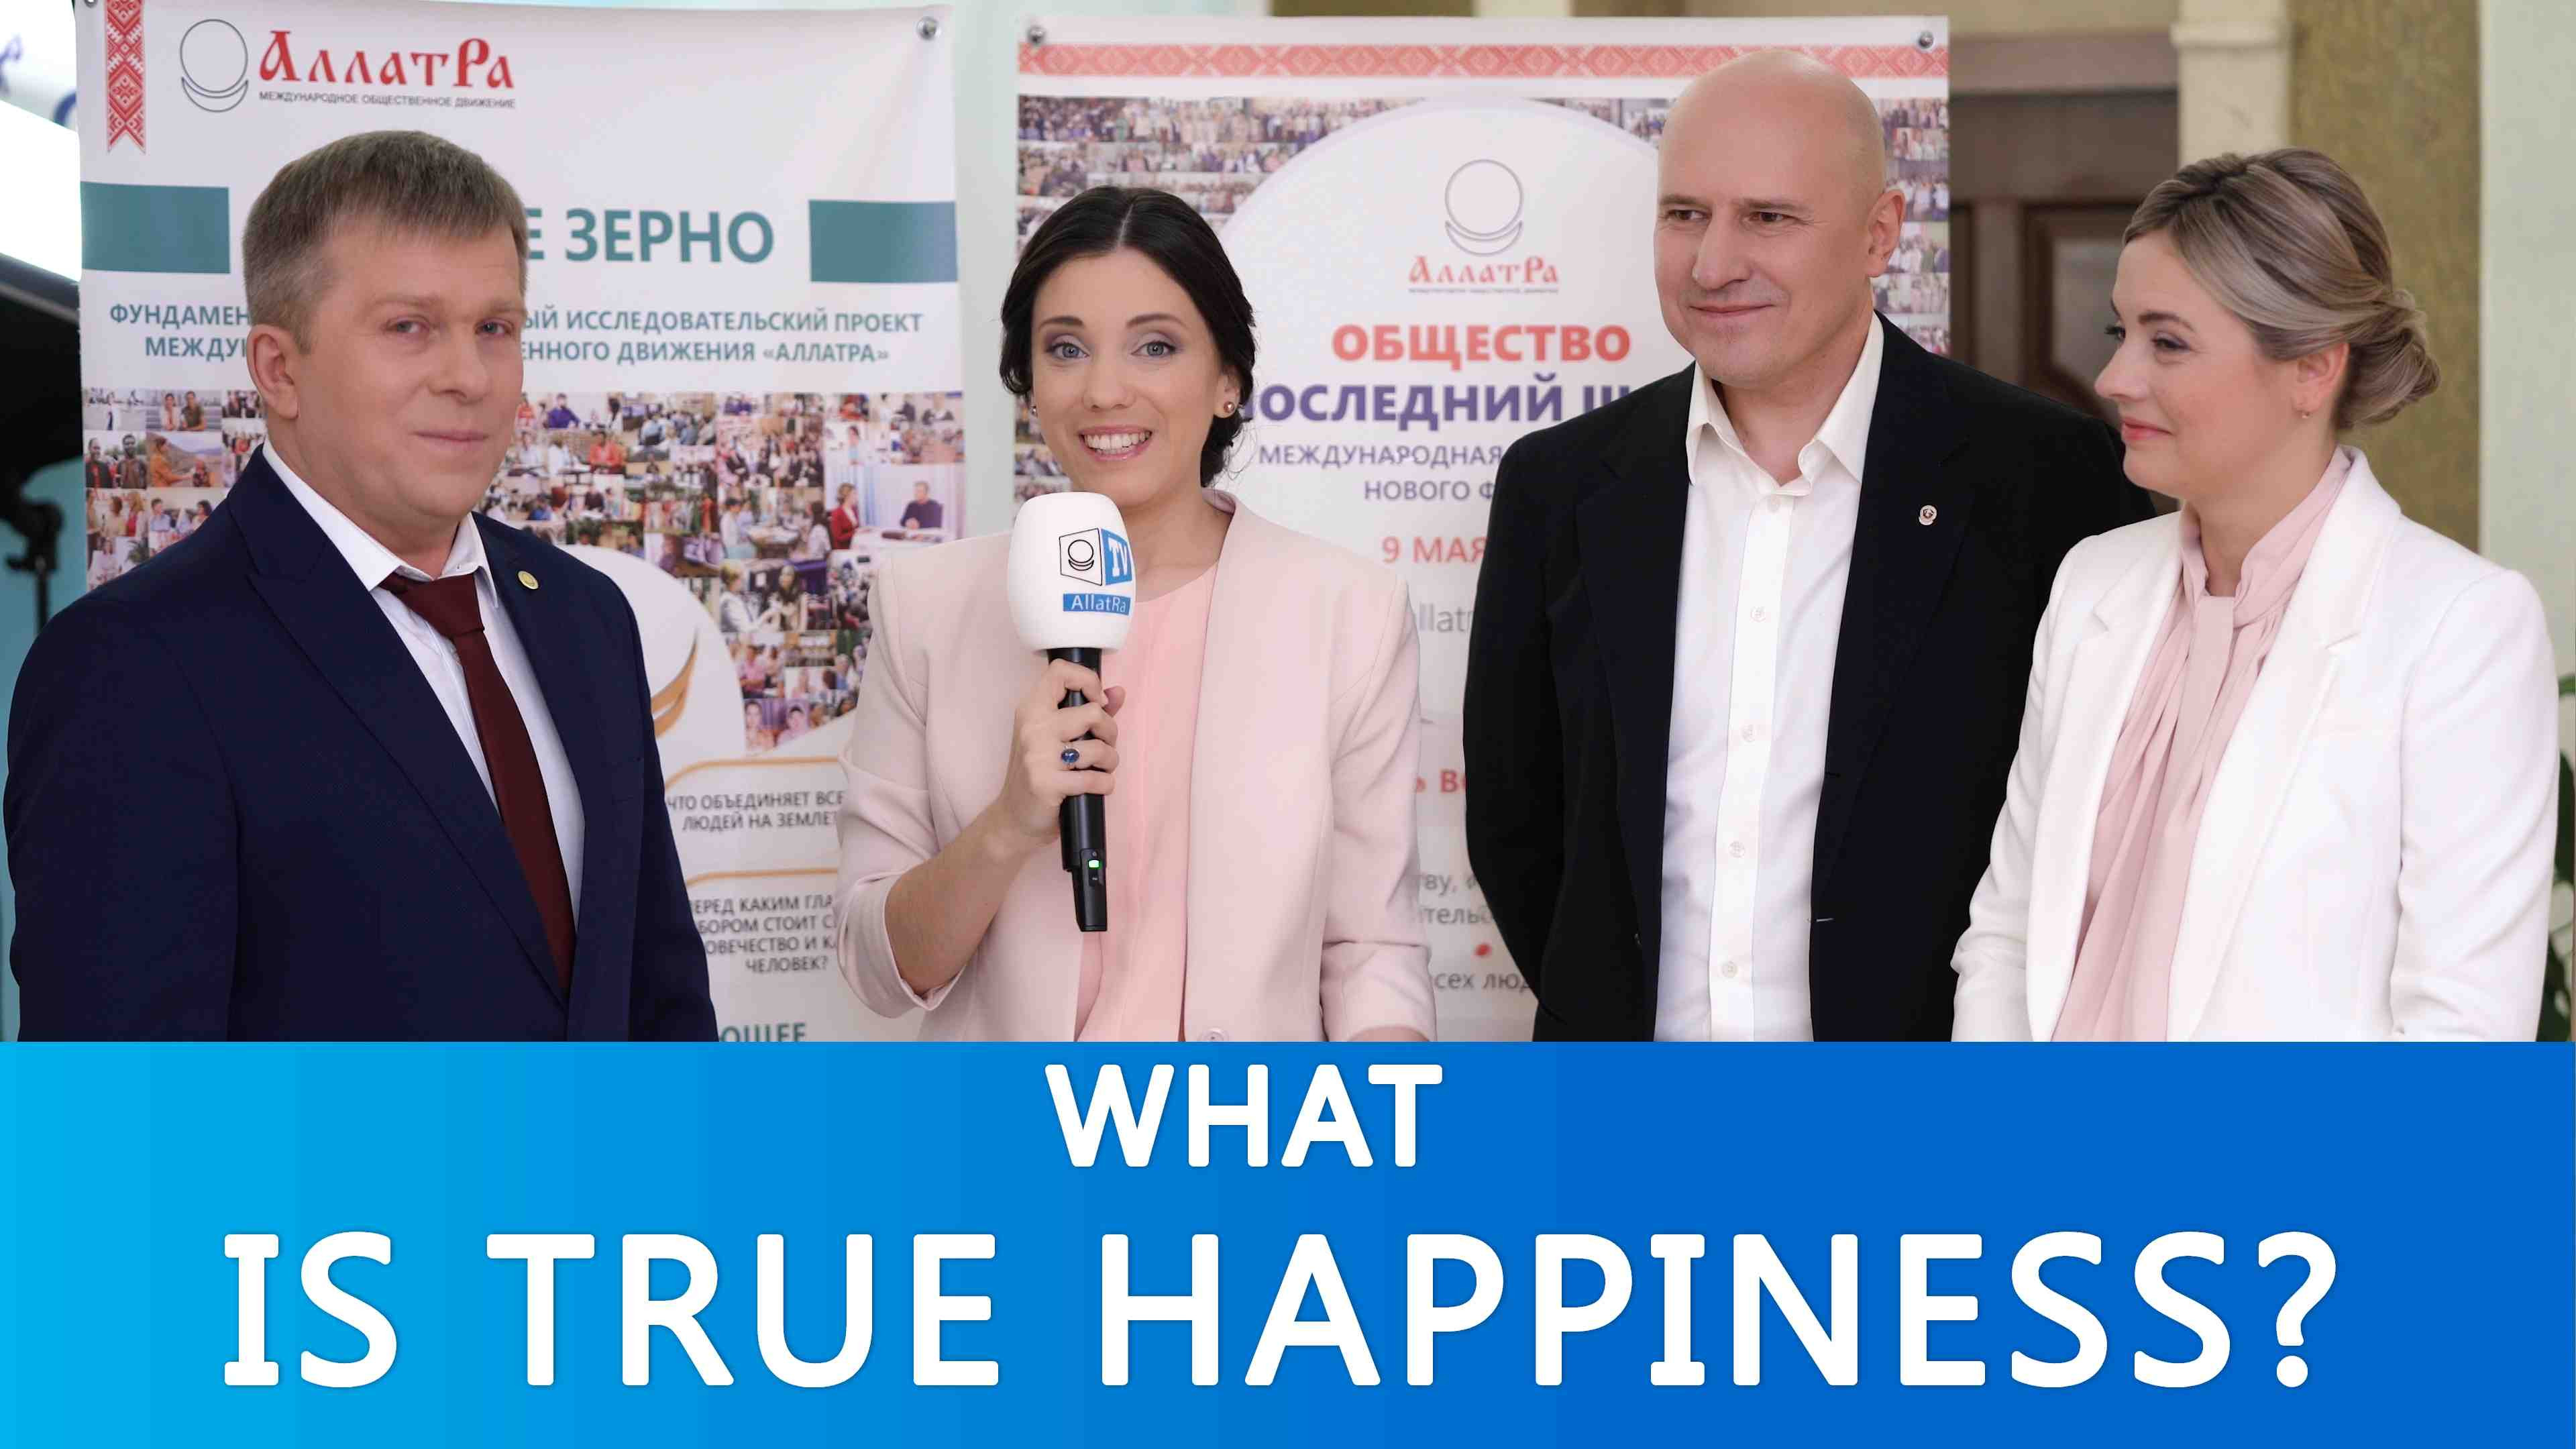 About True Happiness! Questions for Igor Mikhailovich Danilov | ALLATRA